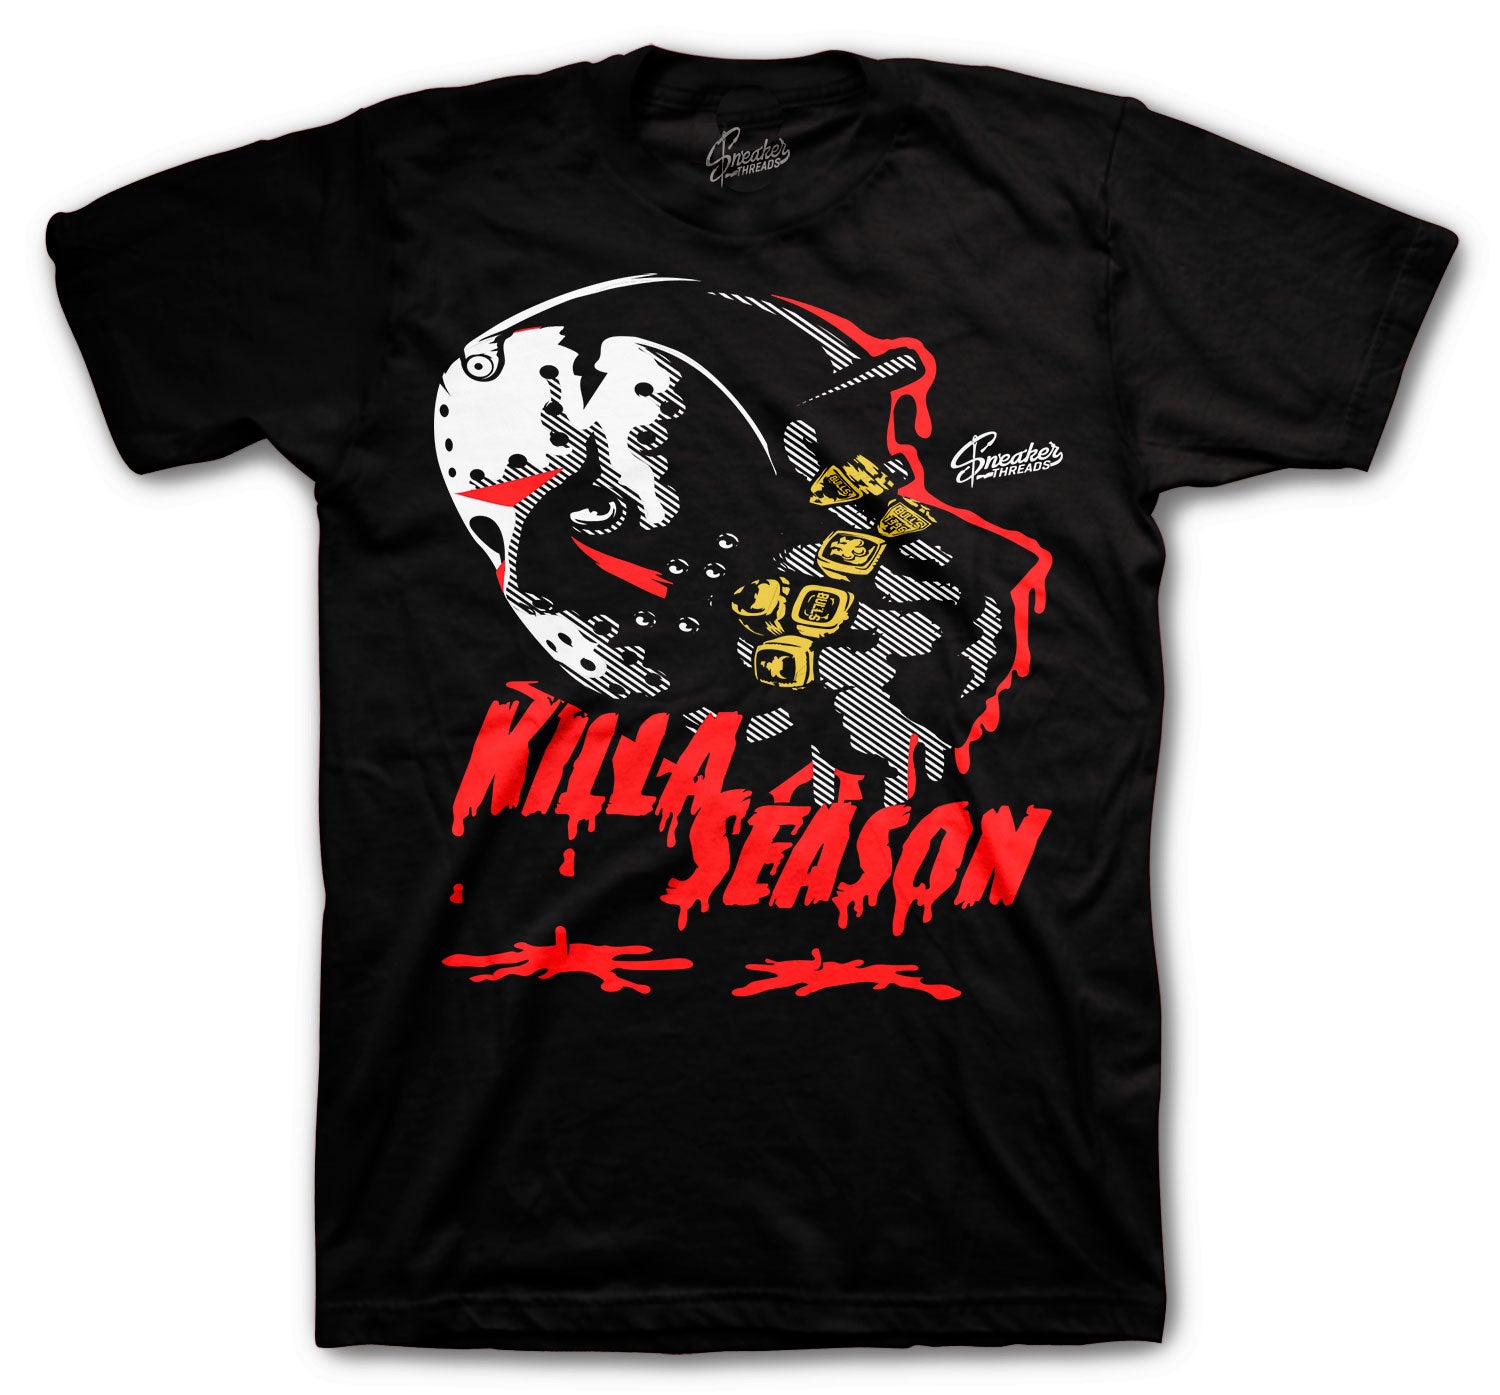 Retro 6 Carmine Shirt - Killa Season - Black